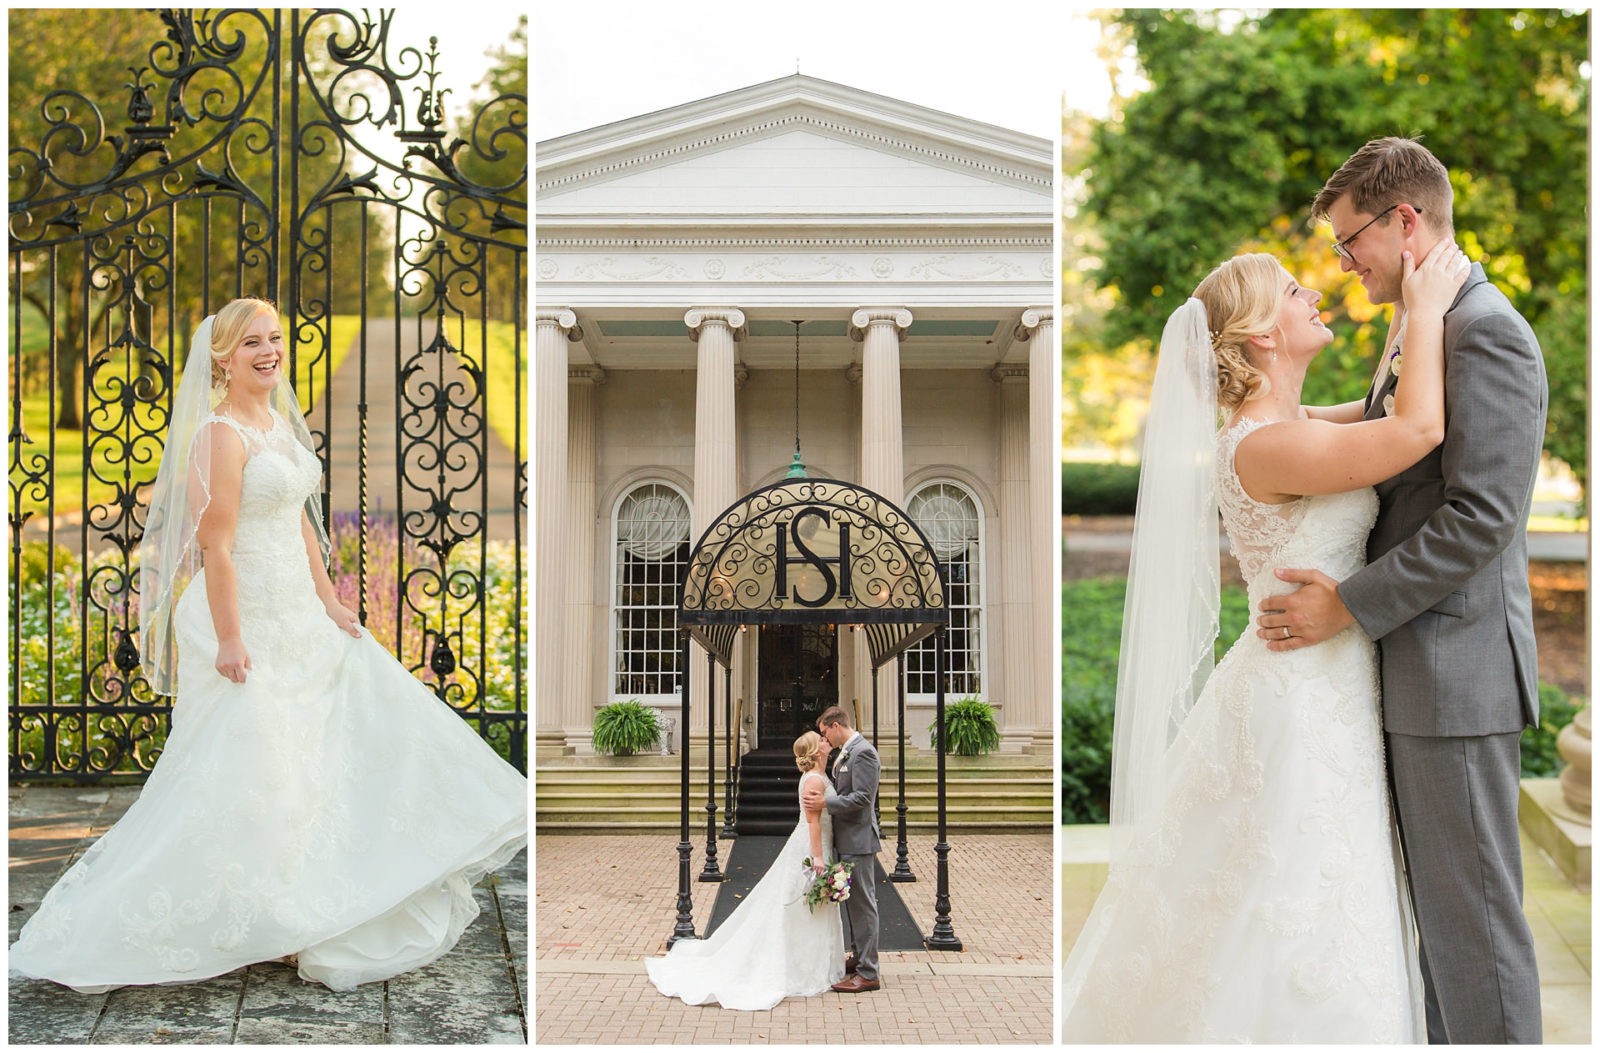 Wedding photos at Spindletop Hall in Lexington, Kentucky.